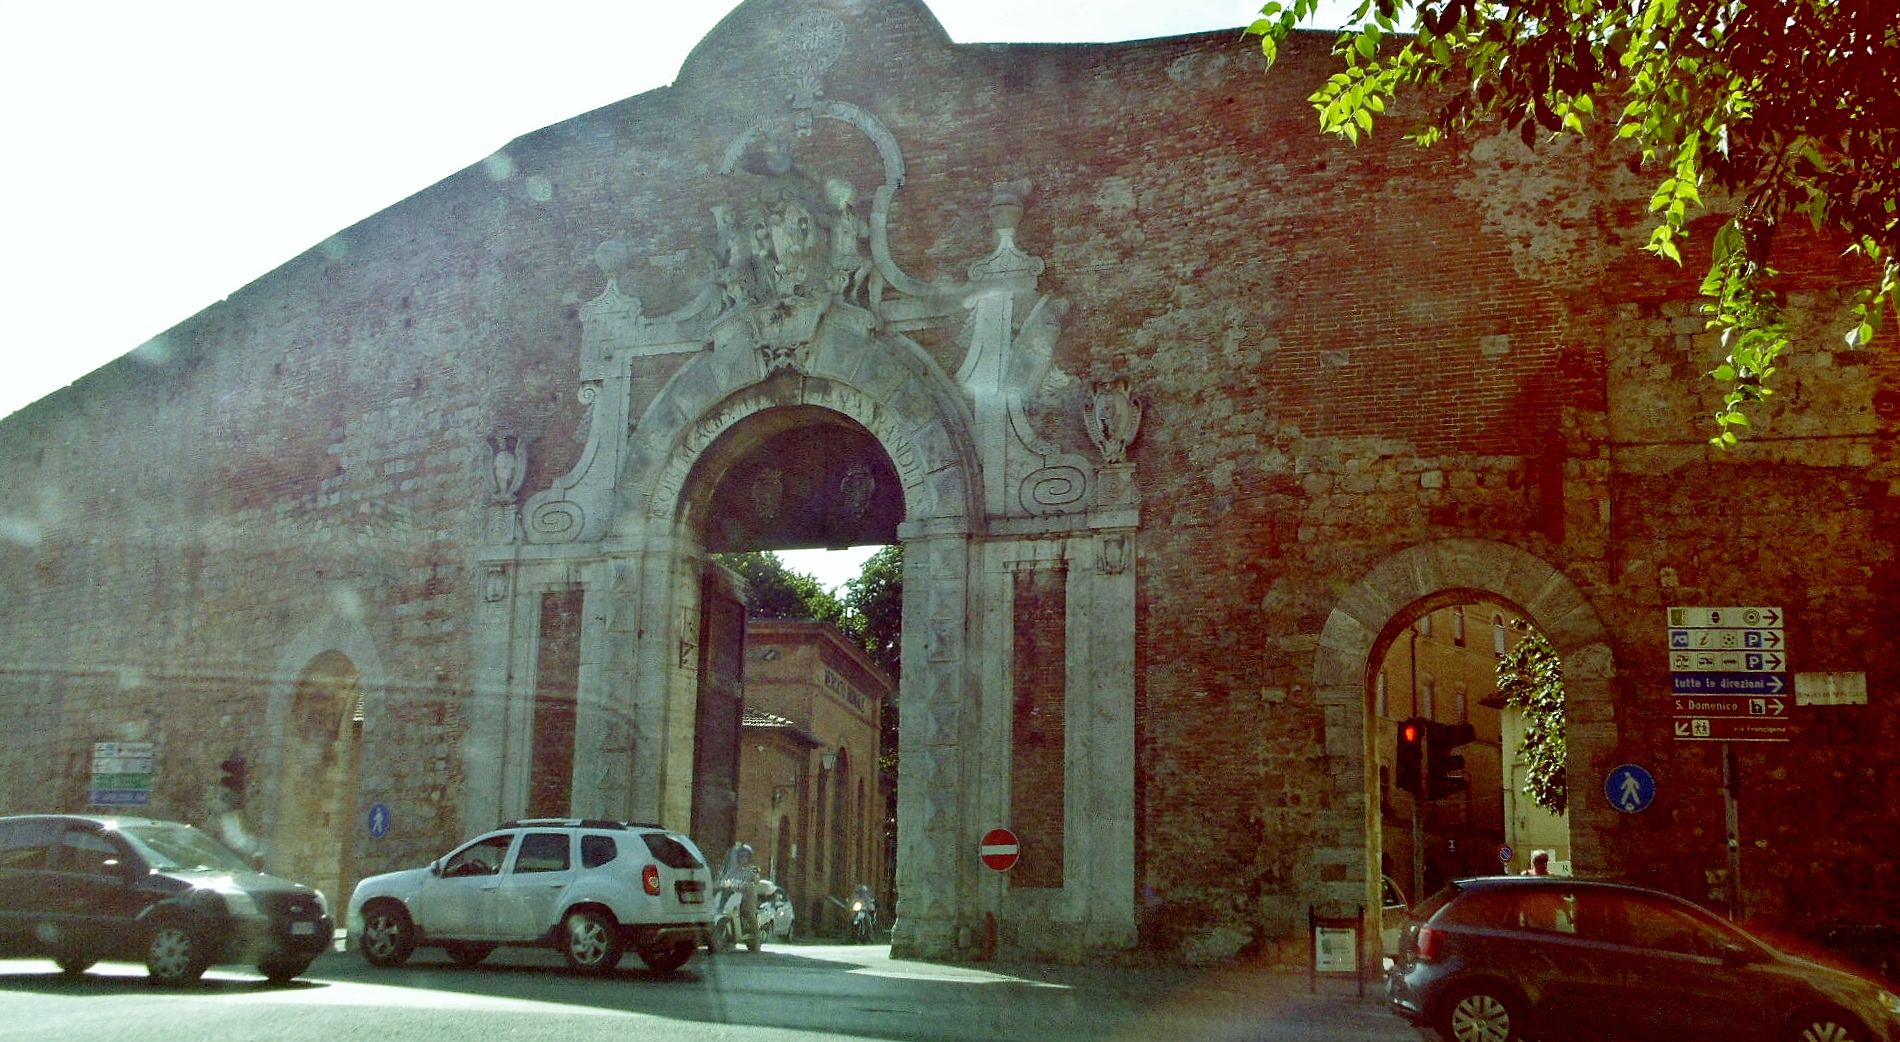 Foto: Puerta de la muralla - Siena (Tuscany), Italia